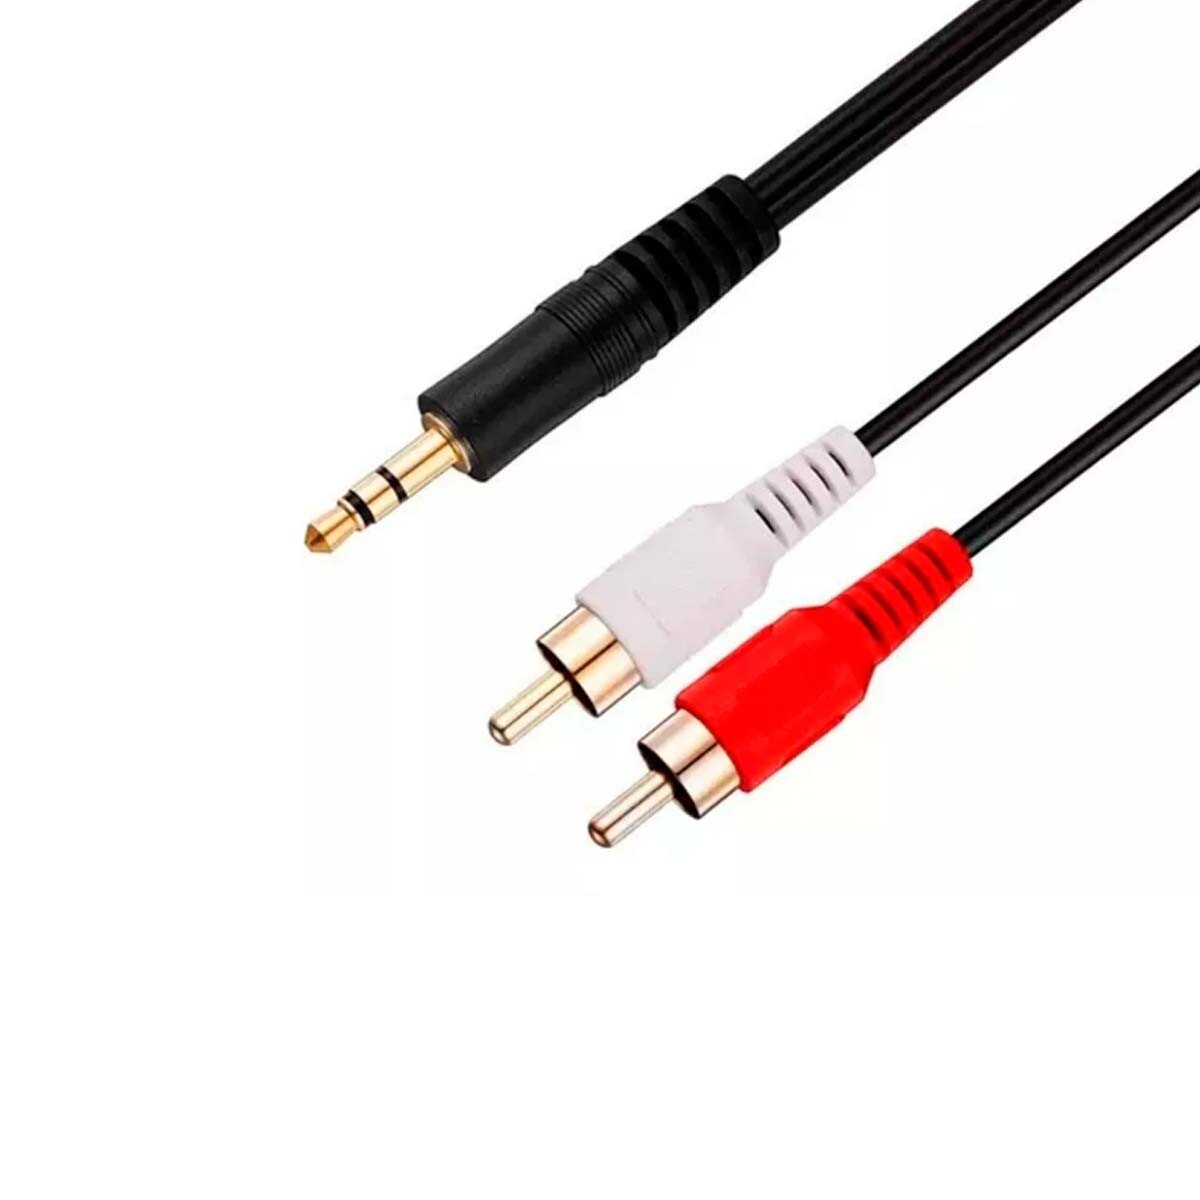 Cable Adaptador Soundking Bi147 5mts 2rca A 1/8st 